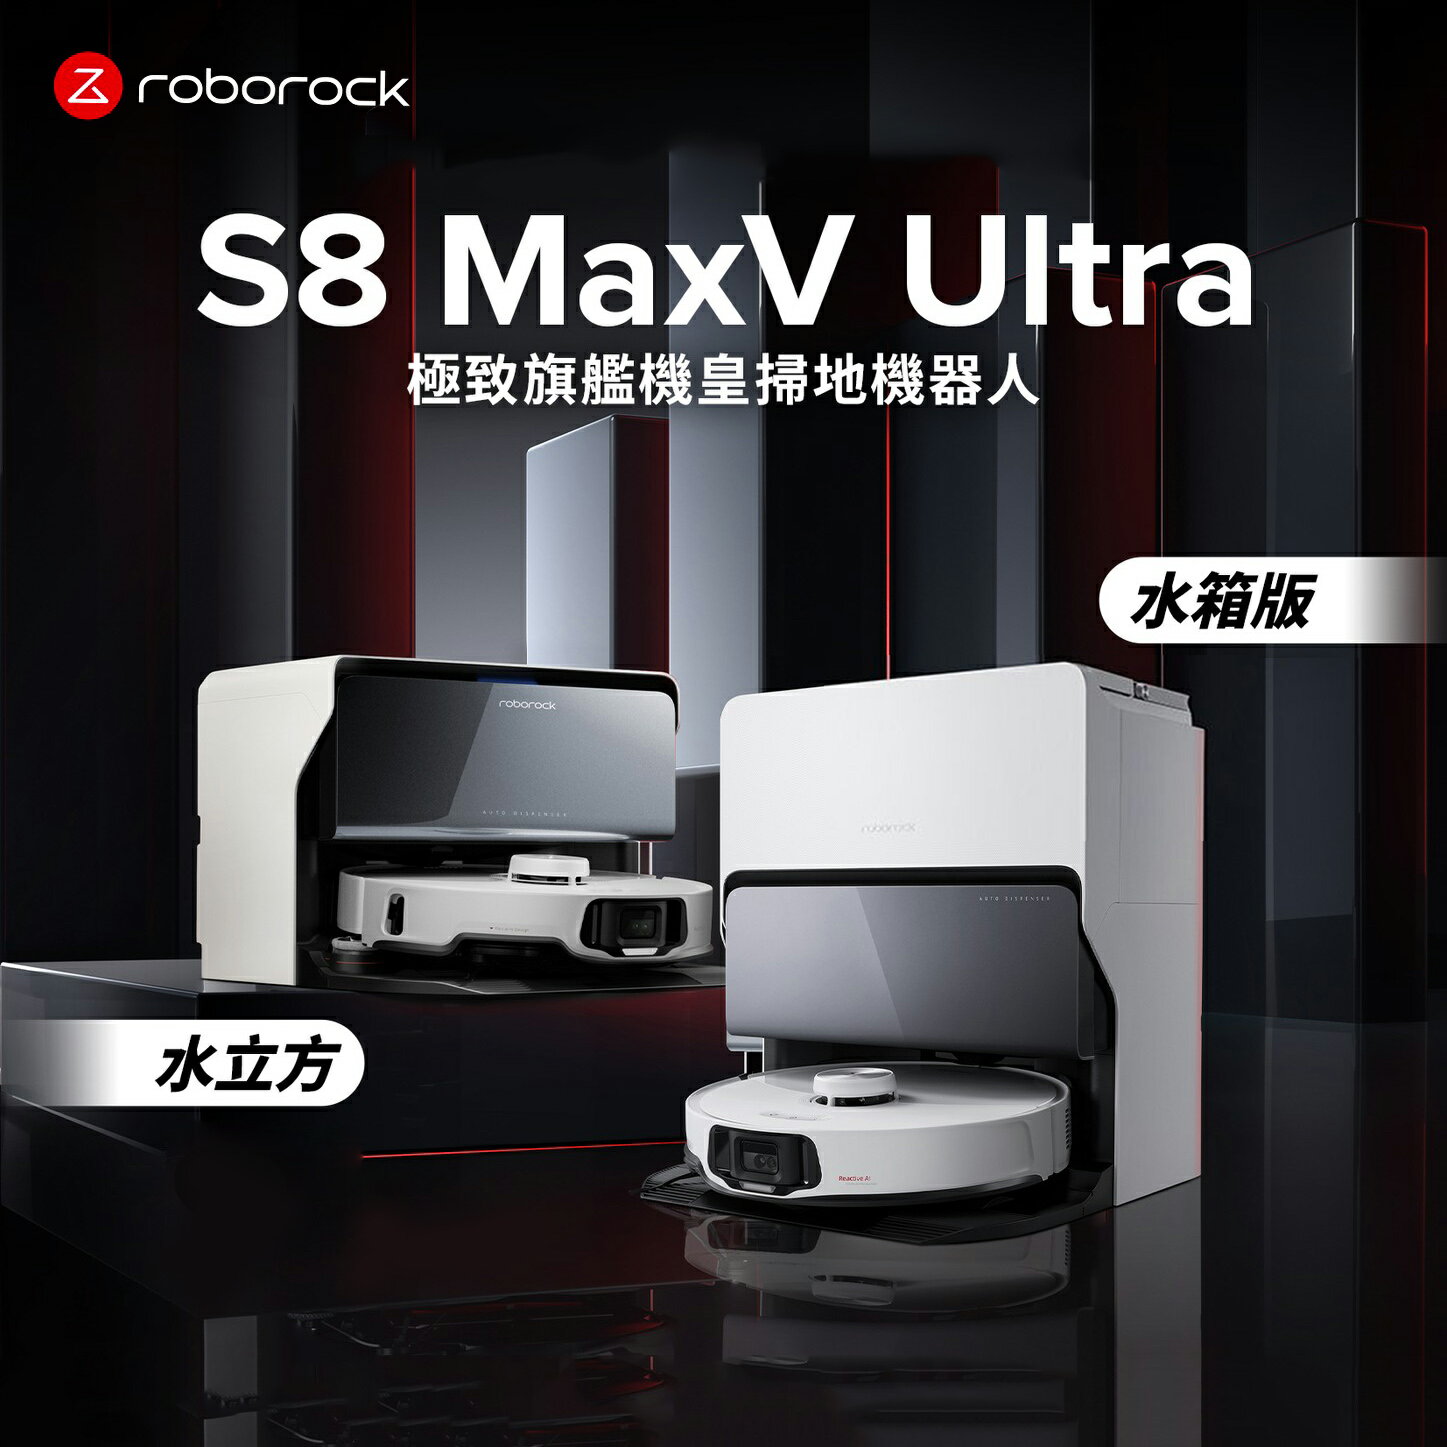 【滿額現折$330 最高3000點回饋】【Roborock 石頭科技】S8 MaxV Ultra 極致旗艦機皇掃地機器人-水箱版 贈雙主刷+S8 MaxV Ultra耗材禮盒+摺疊傘【三井3C】